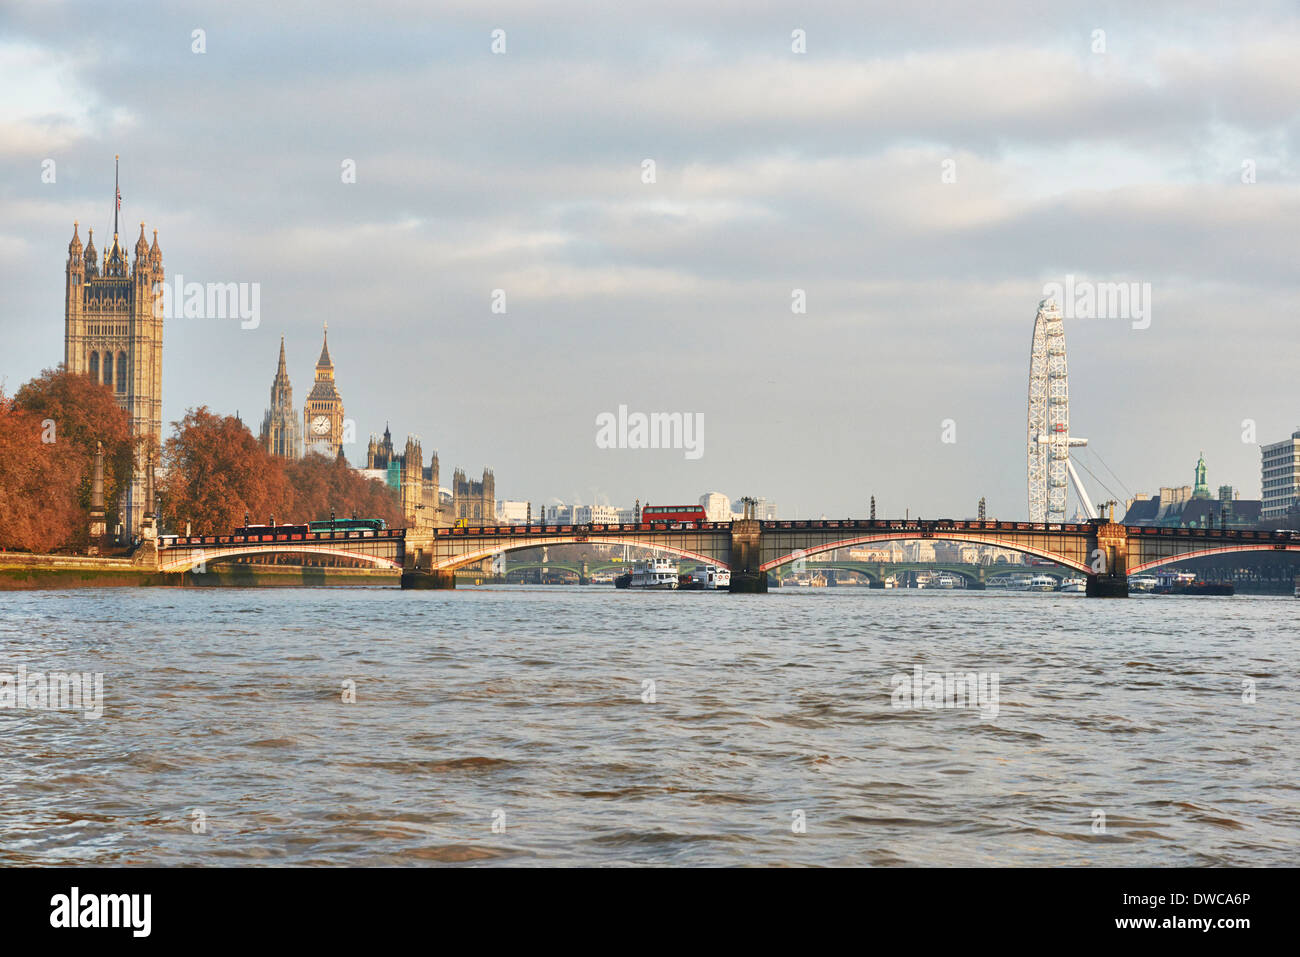 Vue sur le pont de Lambeth et les chambres du Parlement sur la Thames, London, UK Banque D'Images